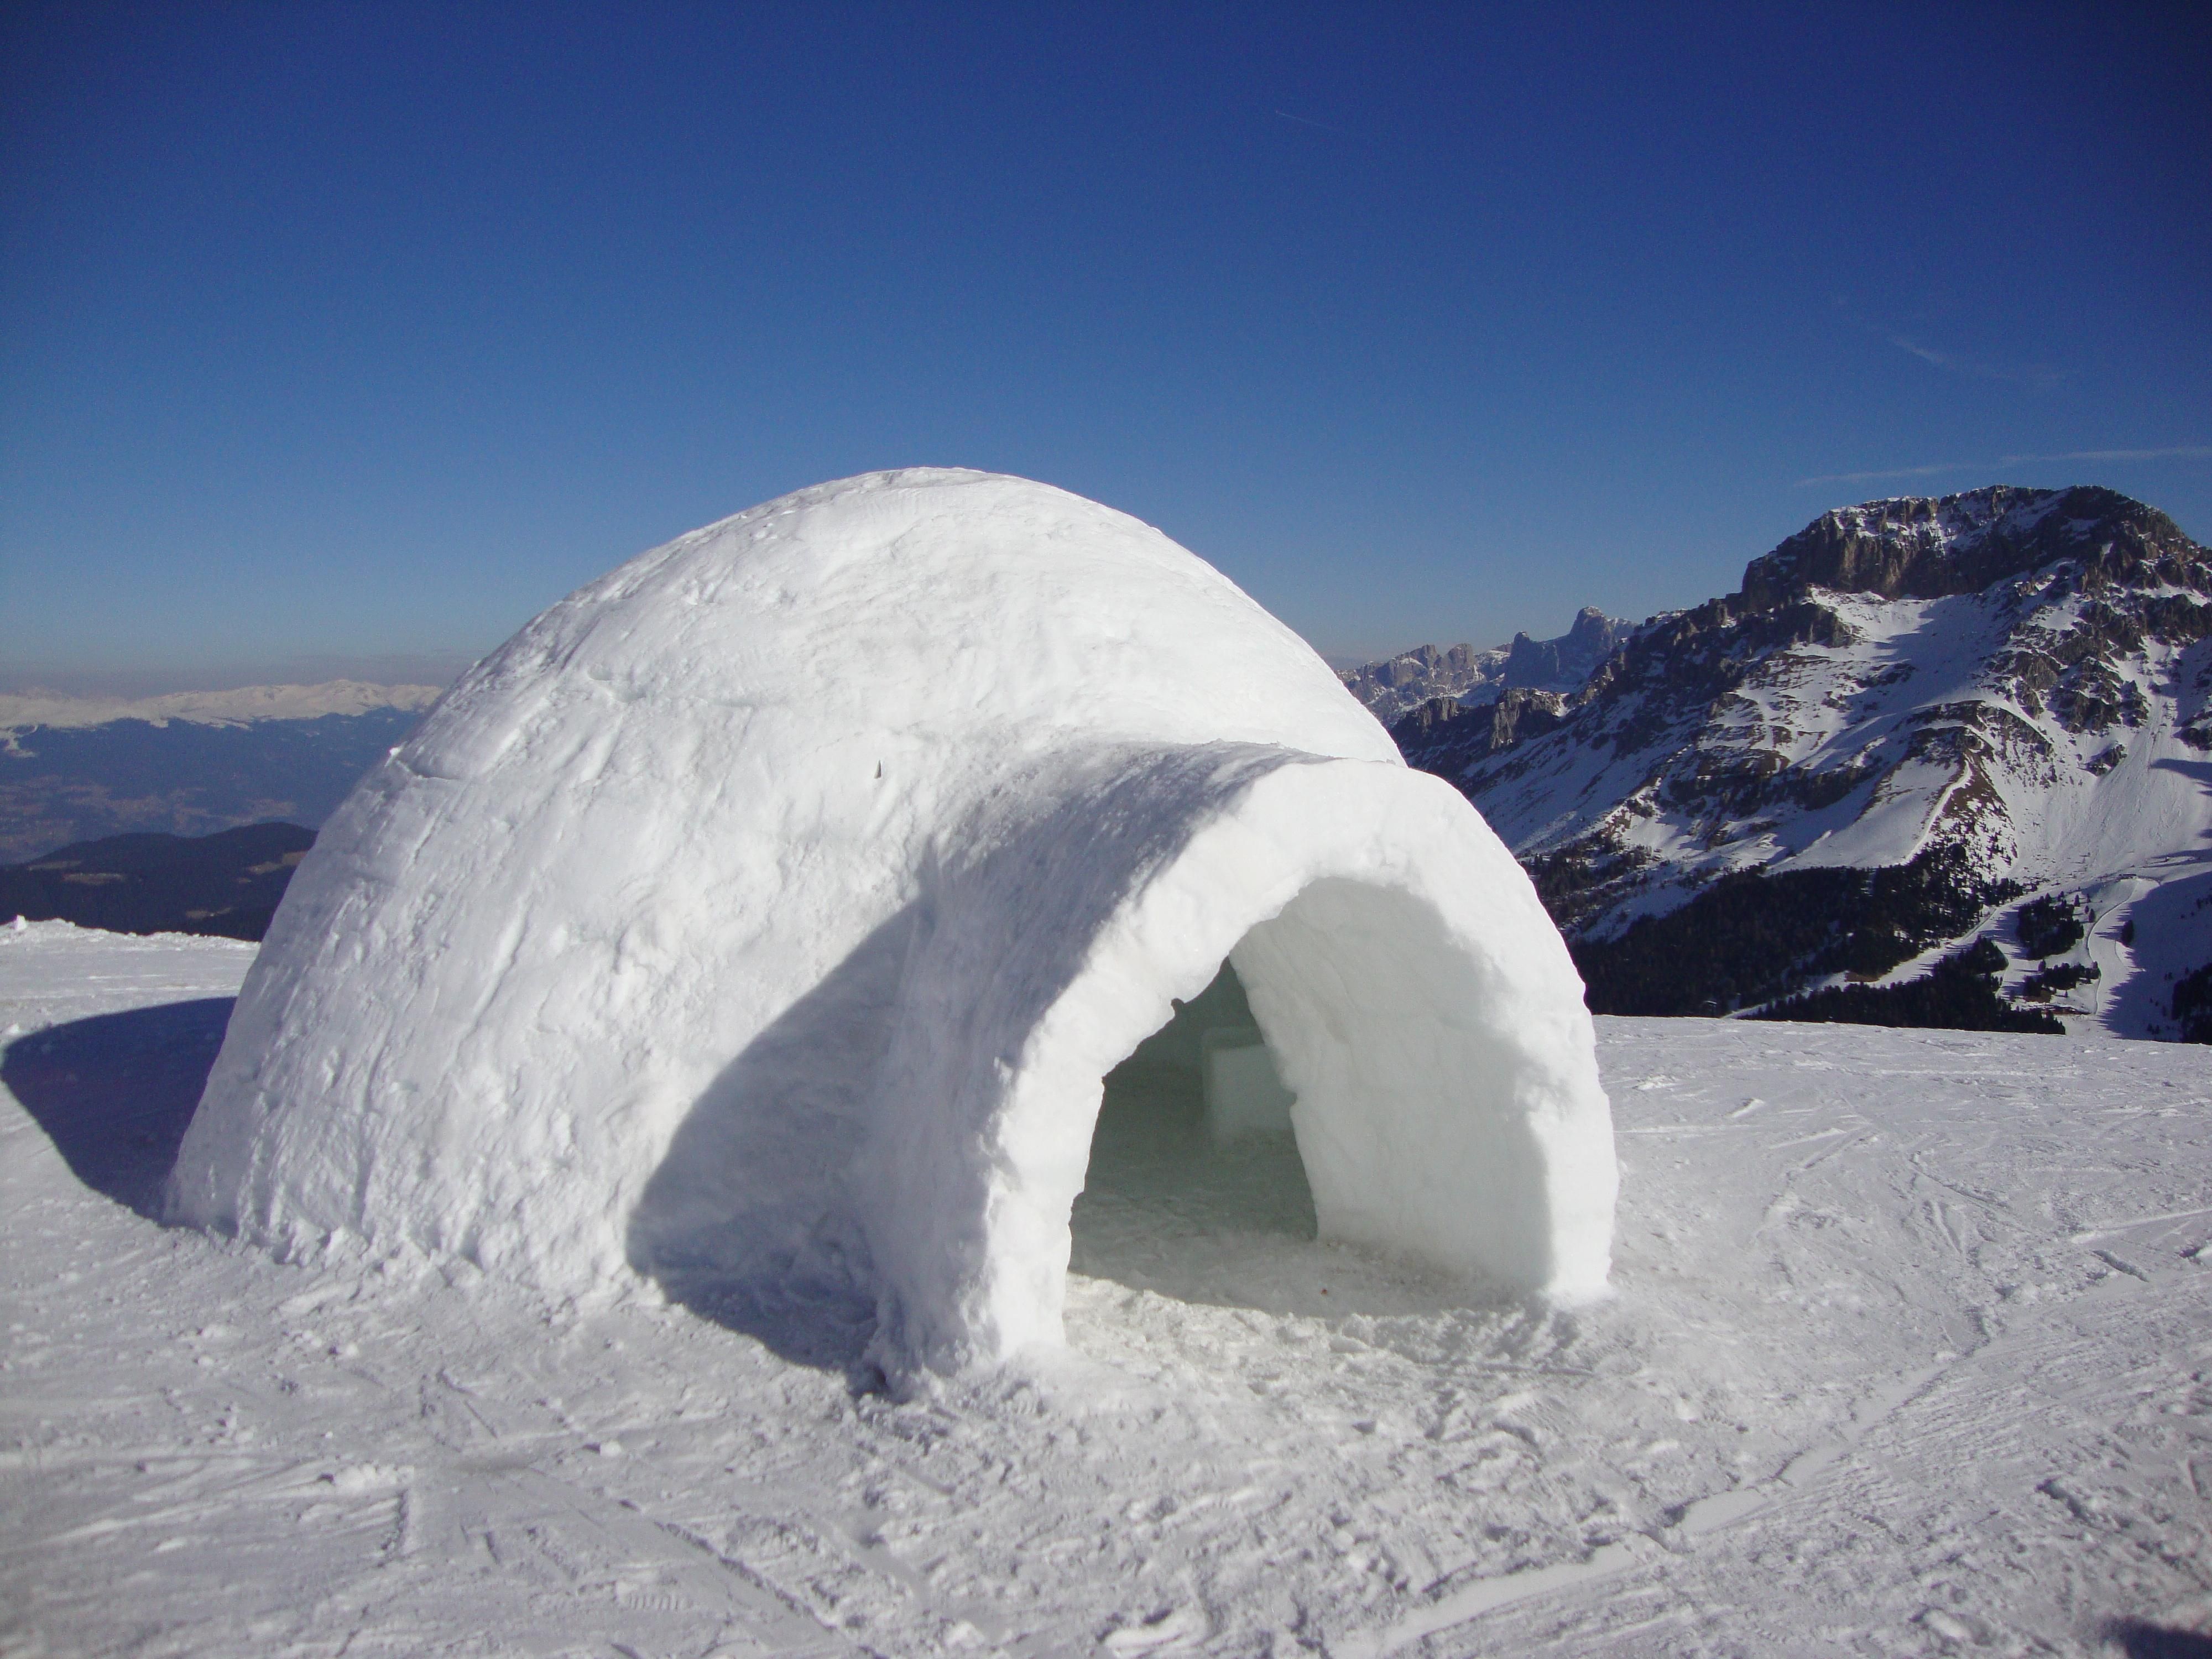  Иглу – ледяной дом в котором живут эскимосы